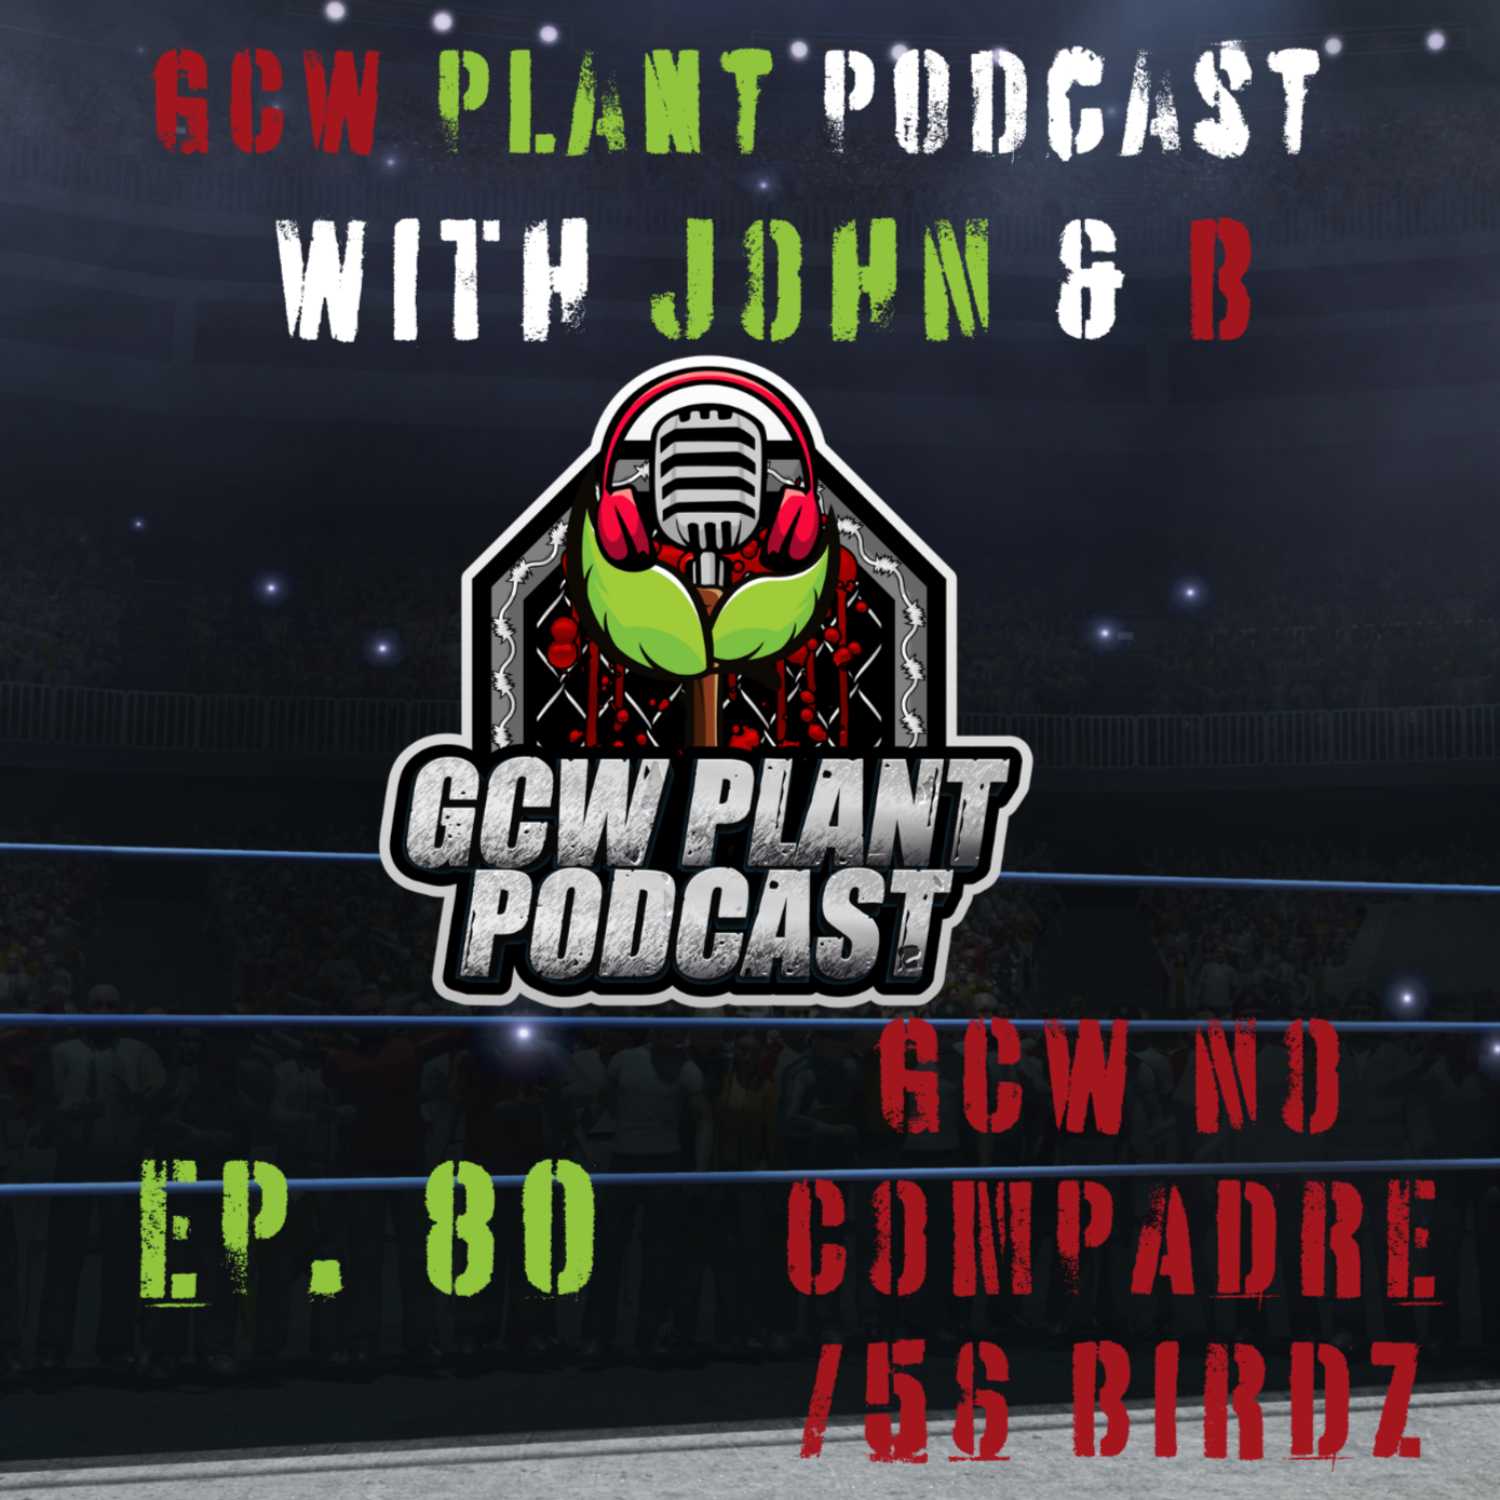 GCW Plant Podcast Ep. 80- GCW No Compadre/ 56 Birdz